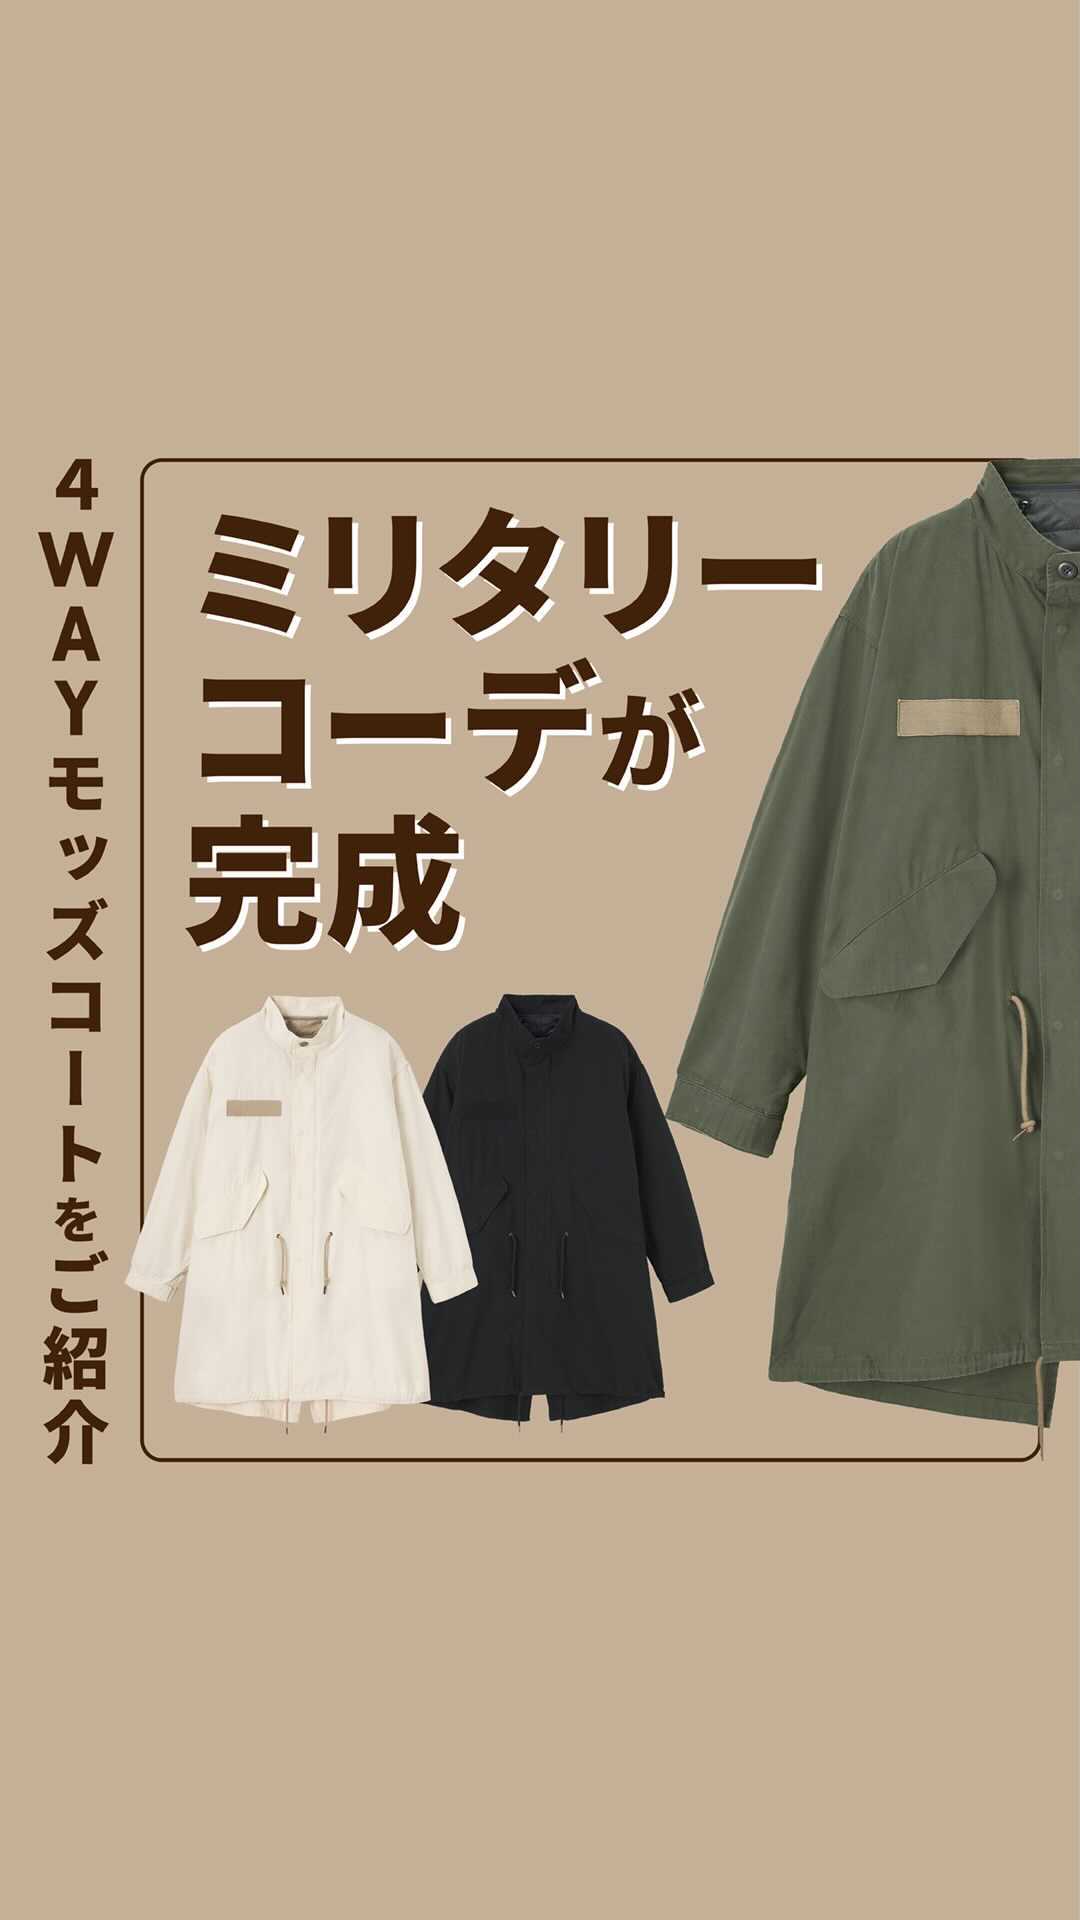 GU For All: 春先まで着用いただける GUおすすめ、4WAYモッズコートをご紹介 ライナーの取り外しにより4通りの着こなしができる万能 モッズコート。活躍する1着です。 ぜ - Ciao Nihon